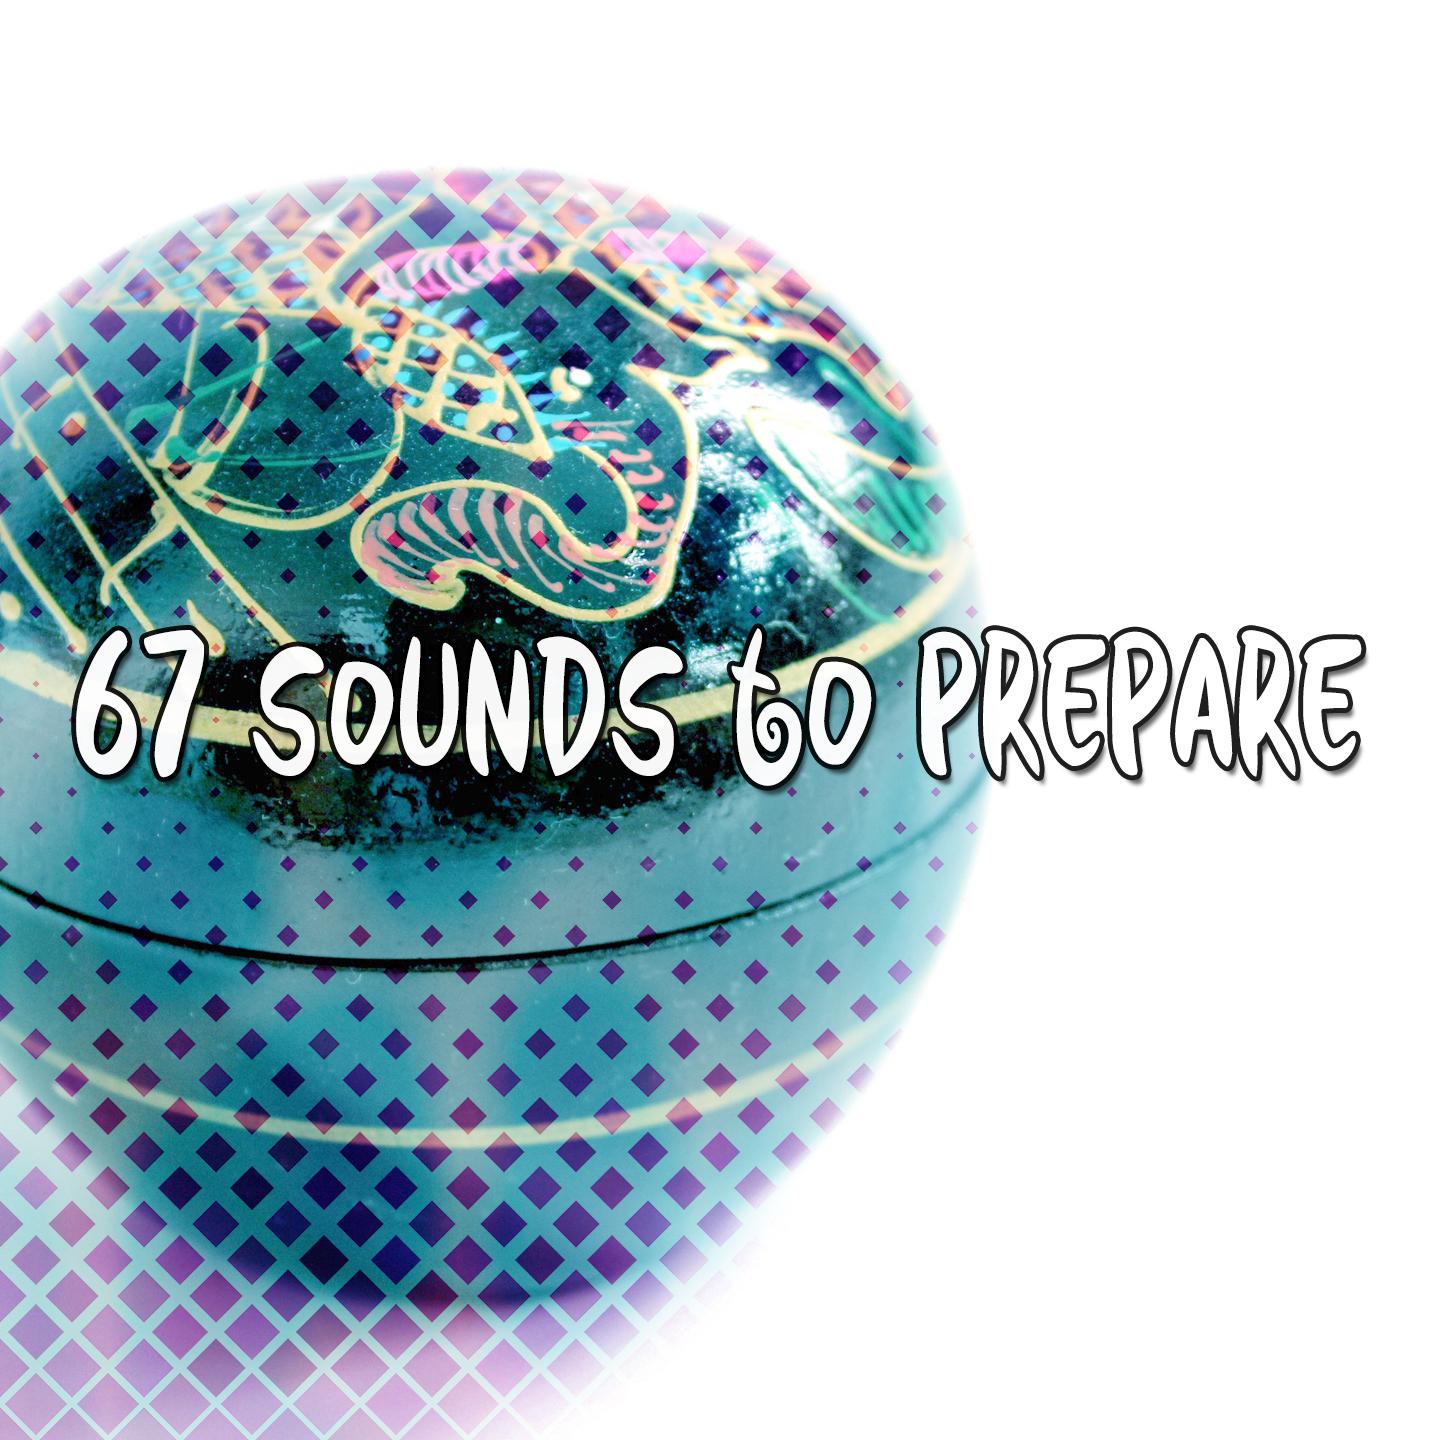 67 Sounds to Prepare